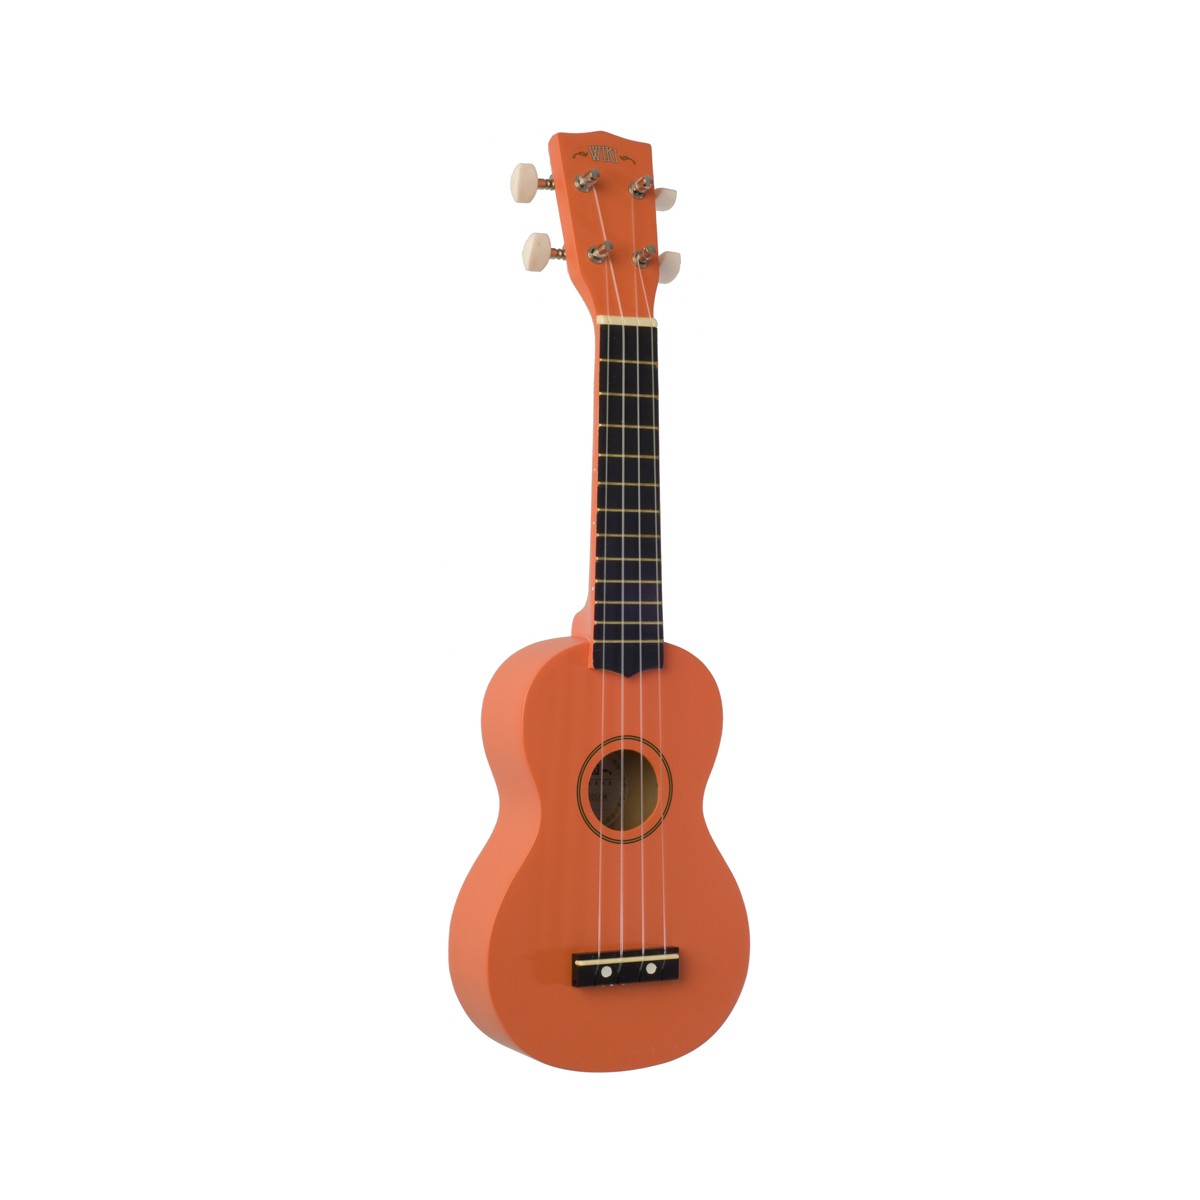 WIKI UK10S OR -  гитара укулеле сопрано, клен, цвет оранжевый матовый, чехол в комплекте